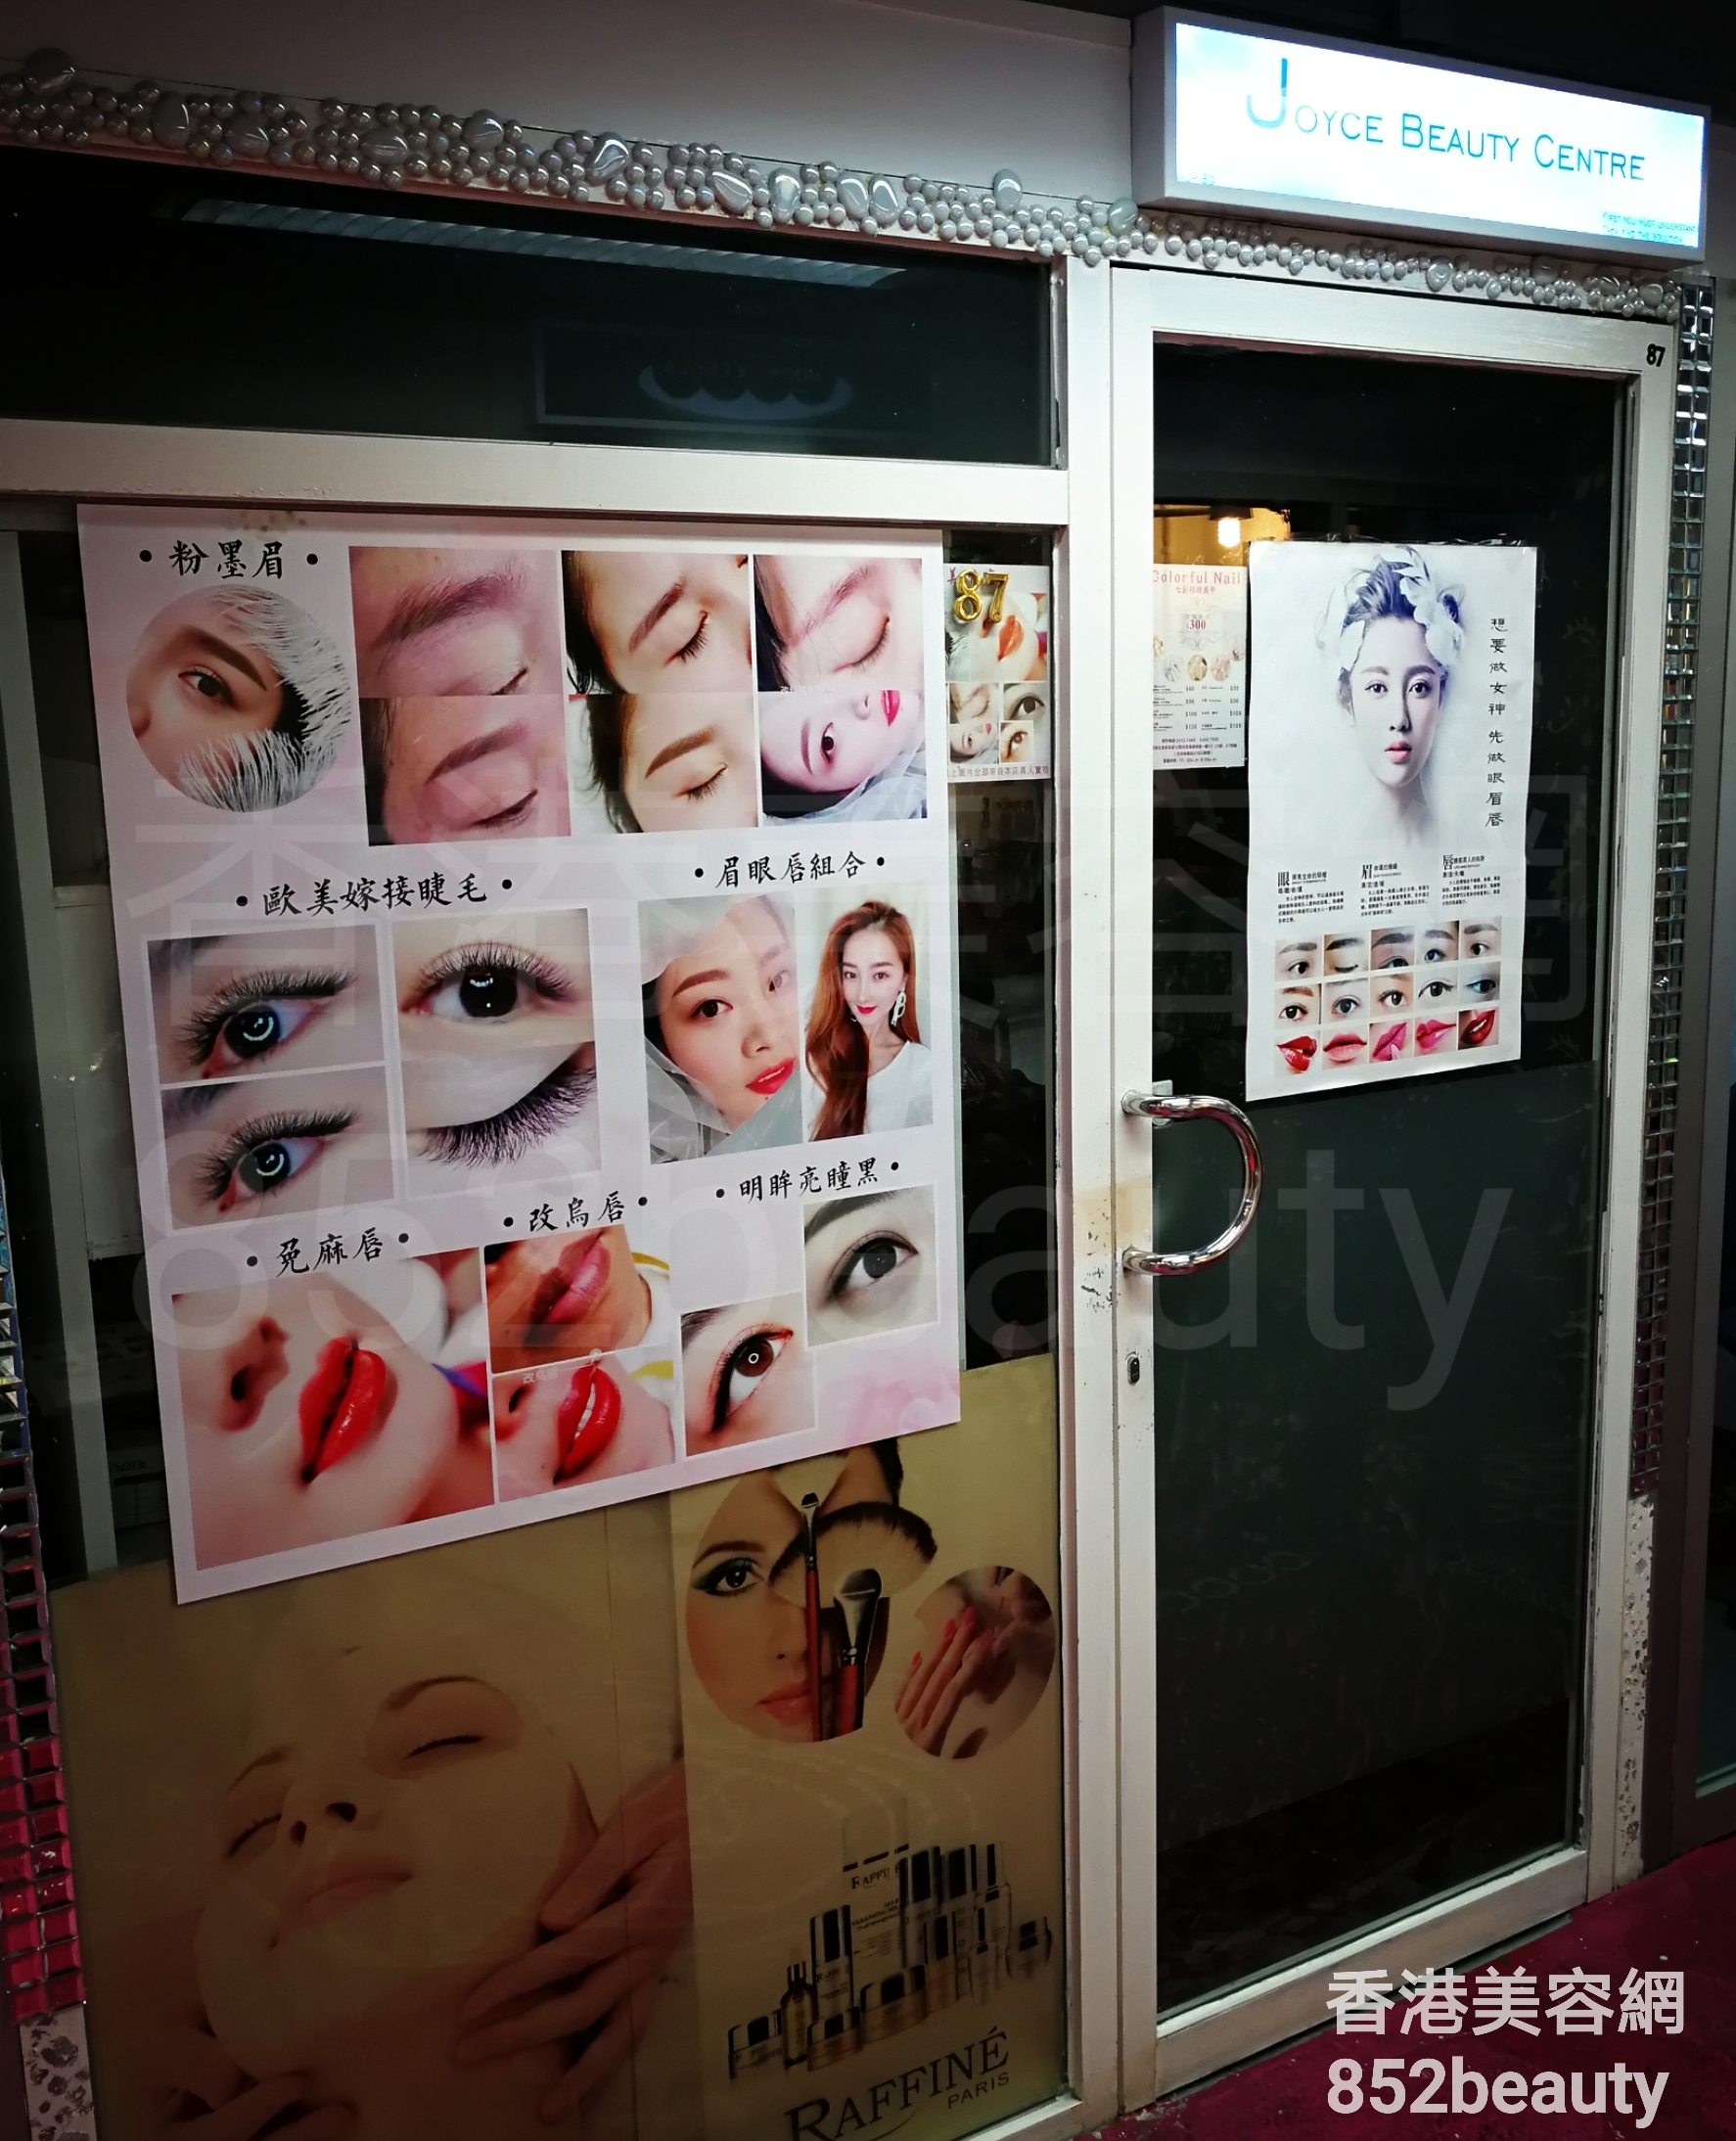 香港美容網 Hong Kong Beauty Salon 美容院 / 美容師: JOYCE BEAUTY CENTRE